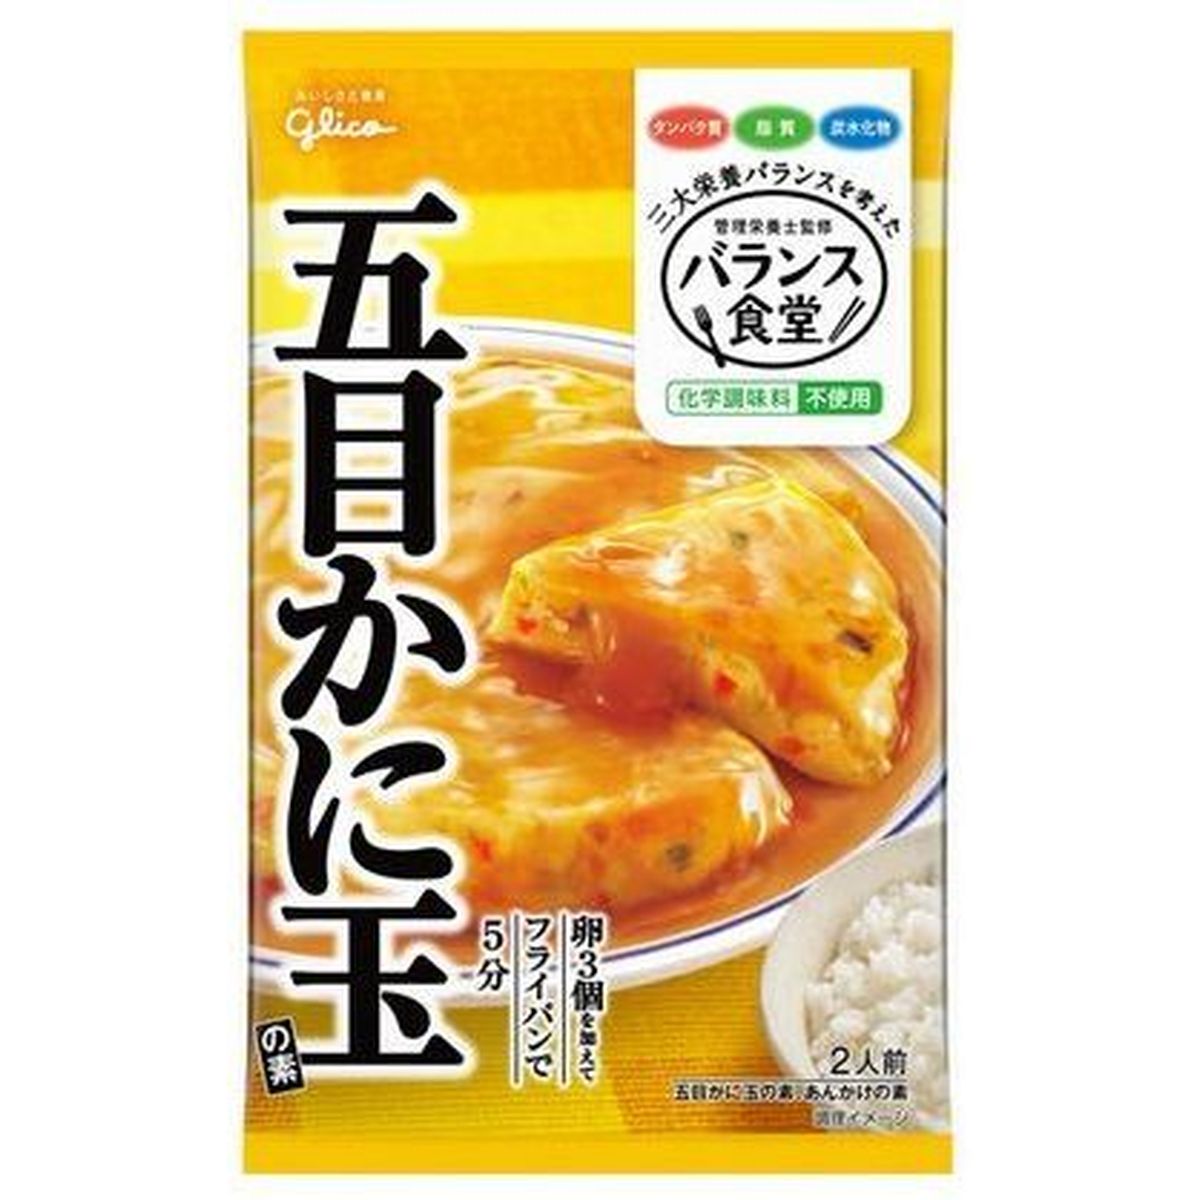 【10個入リ】グリコ バランス食堂 五目カニ玉ノ素 34.6g